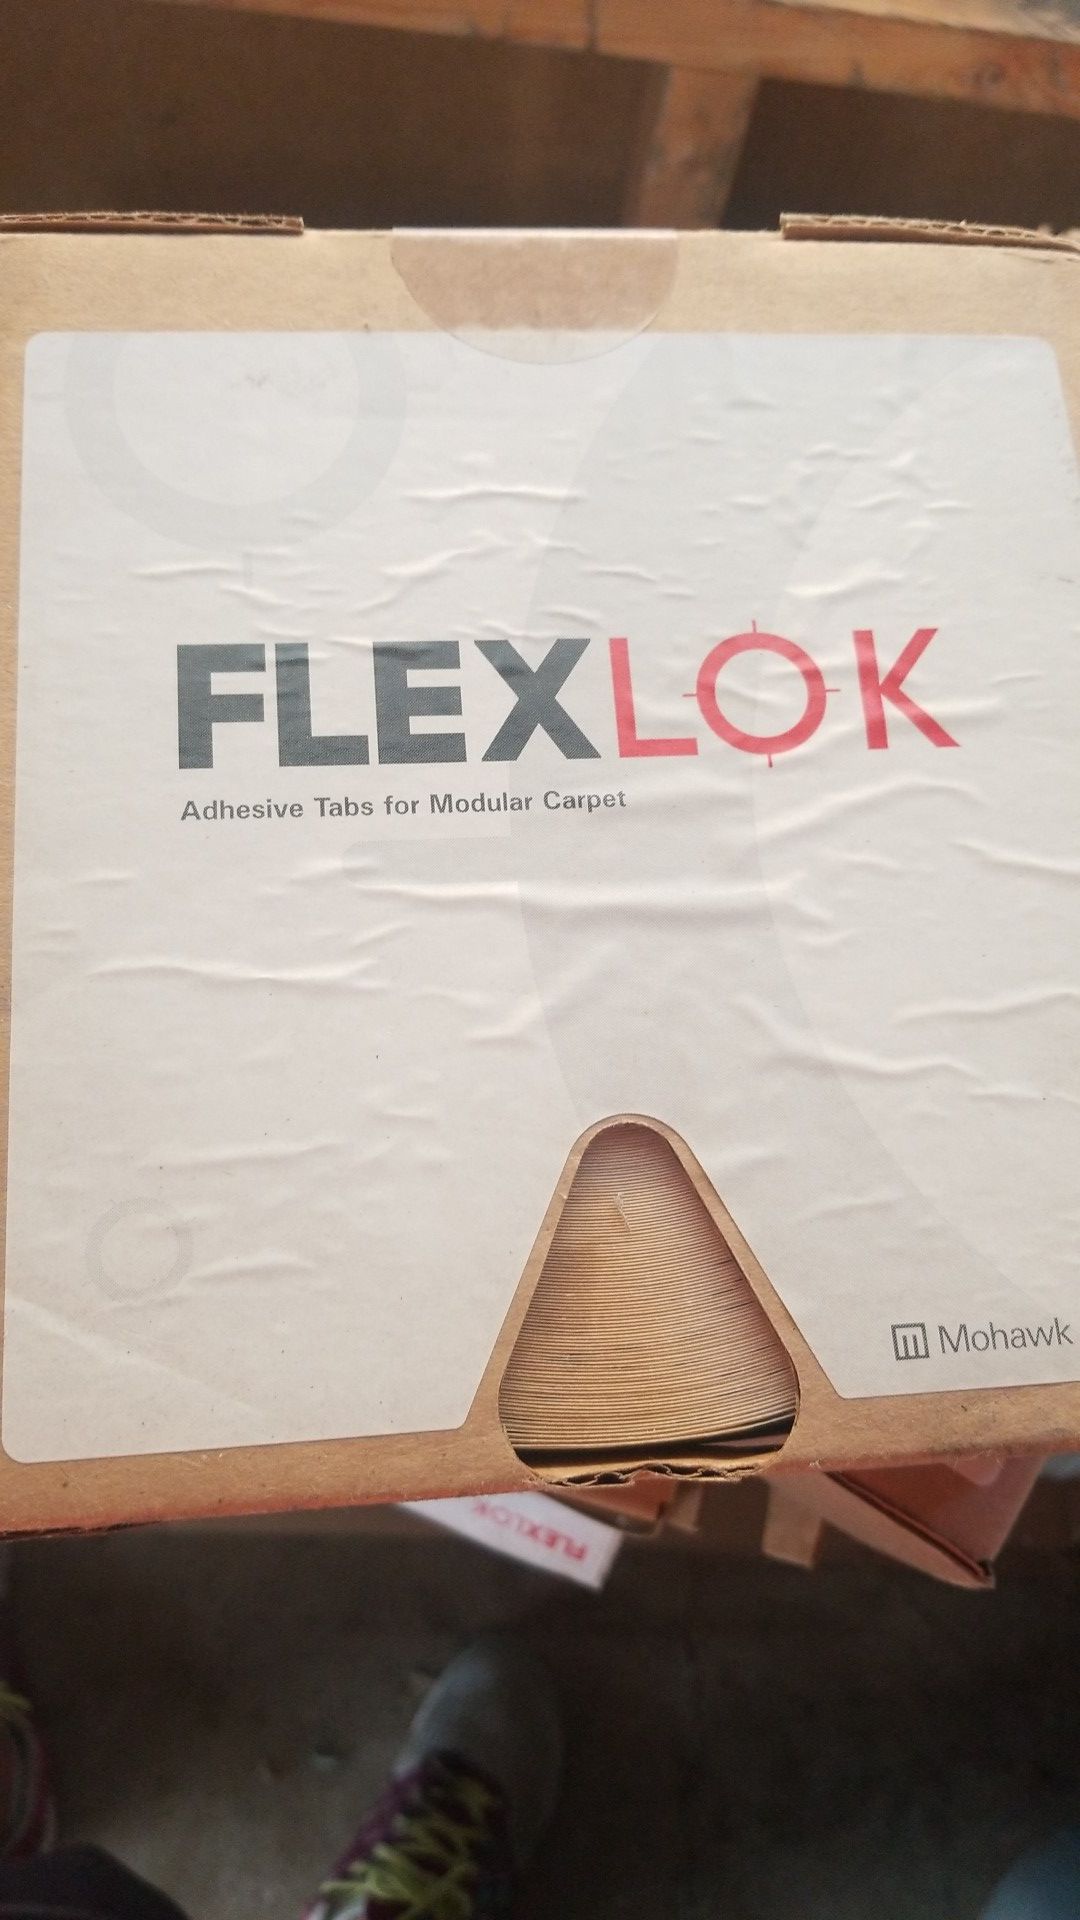 Flexlok